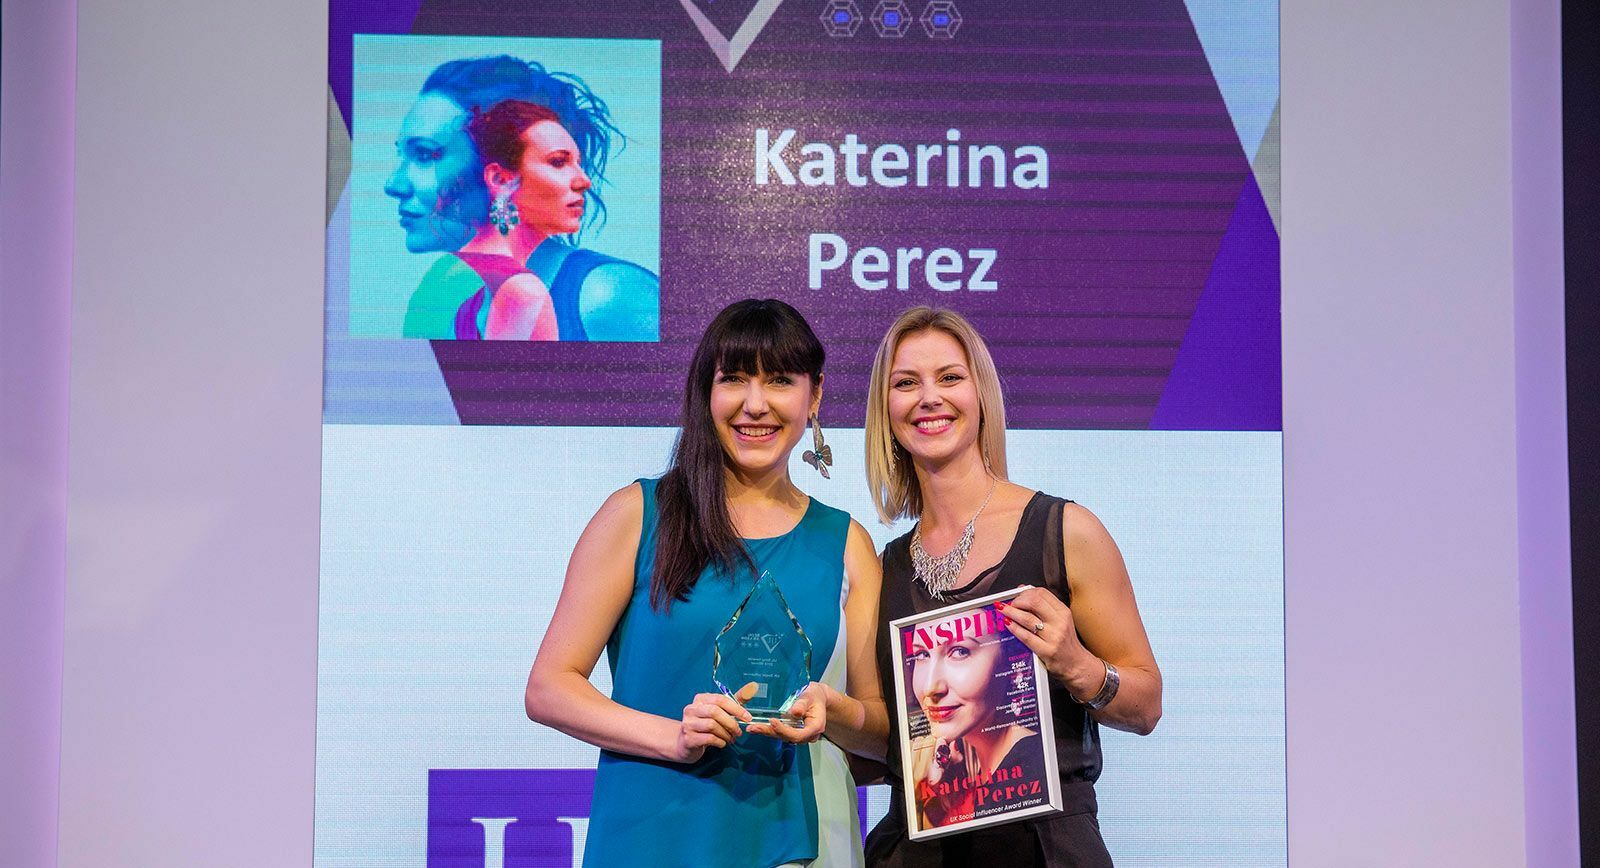 IJL 2018: Катерина Перез выиграла награду 'UK Social Media influencer'